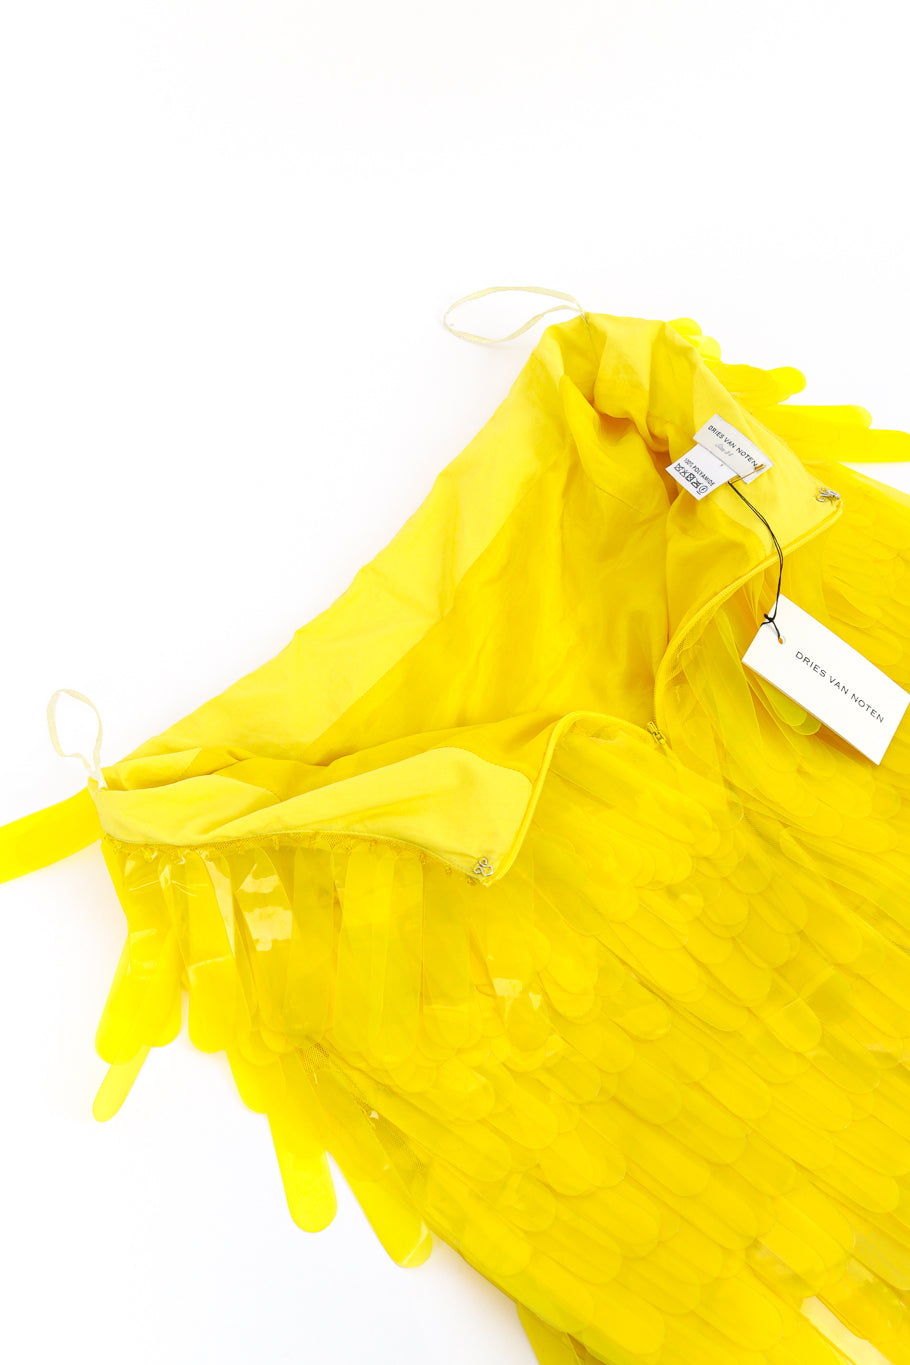 Dries Van Noten 2019 S/S Paillette Midi Skirt back unzipped @recess la